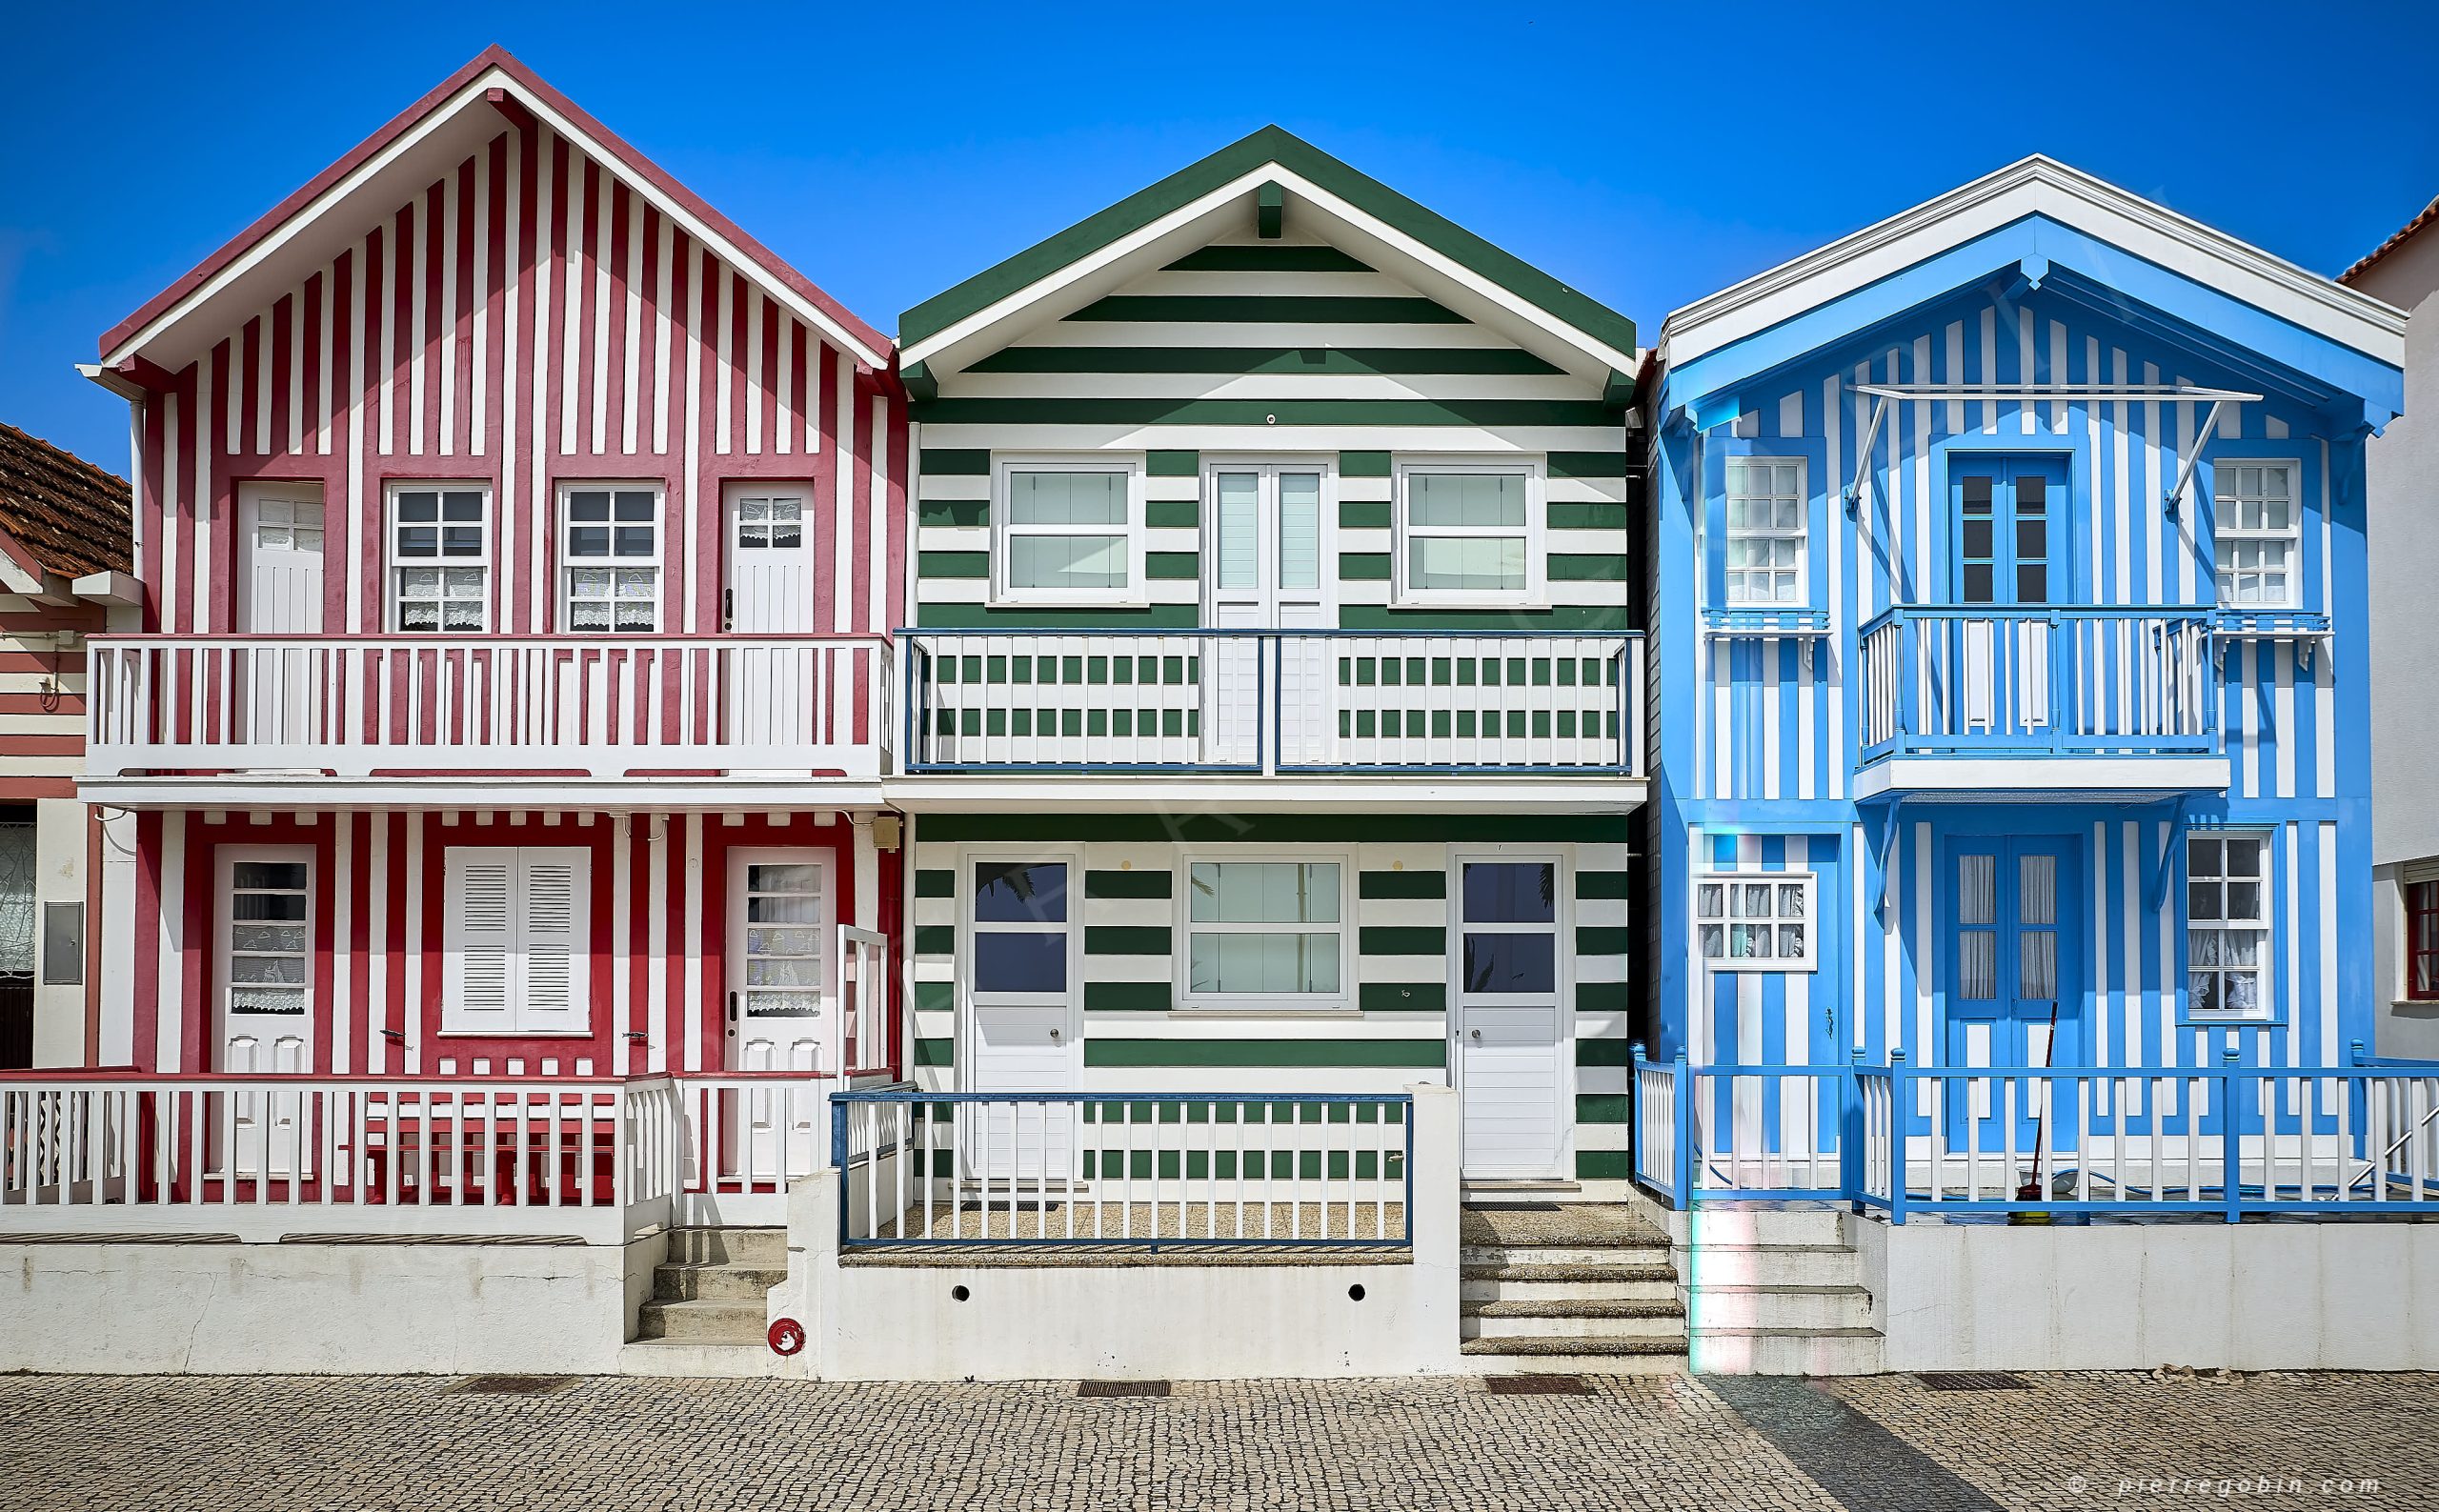 Maisons d'Aveiro au Portugal avec leur colombages colorés